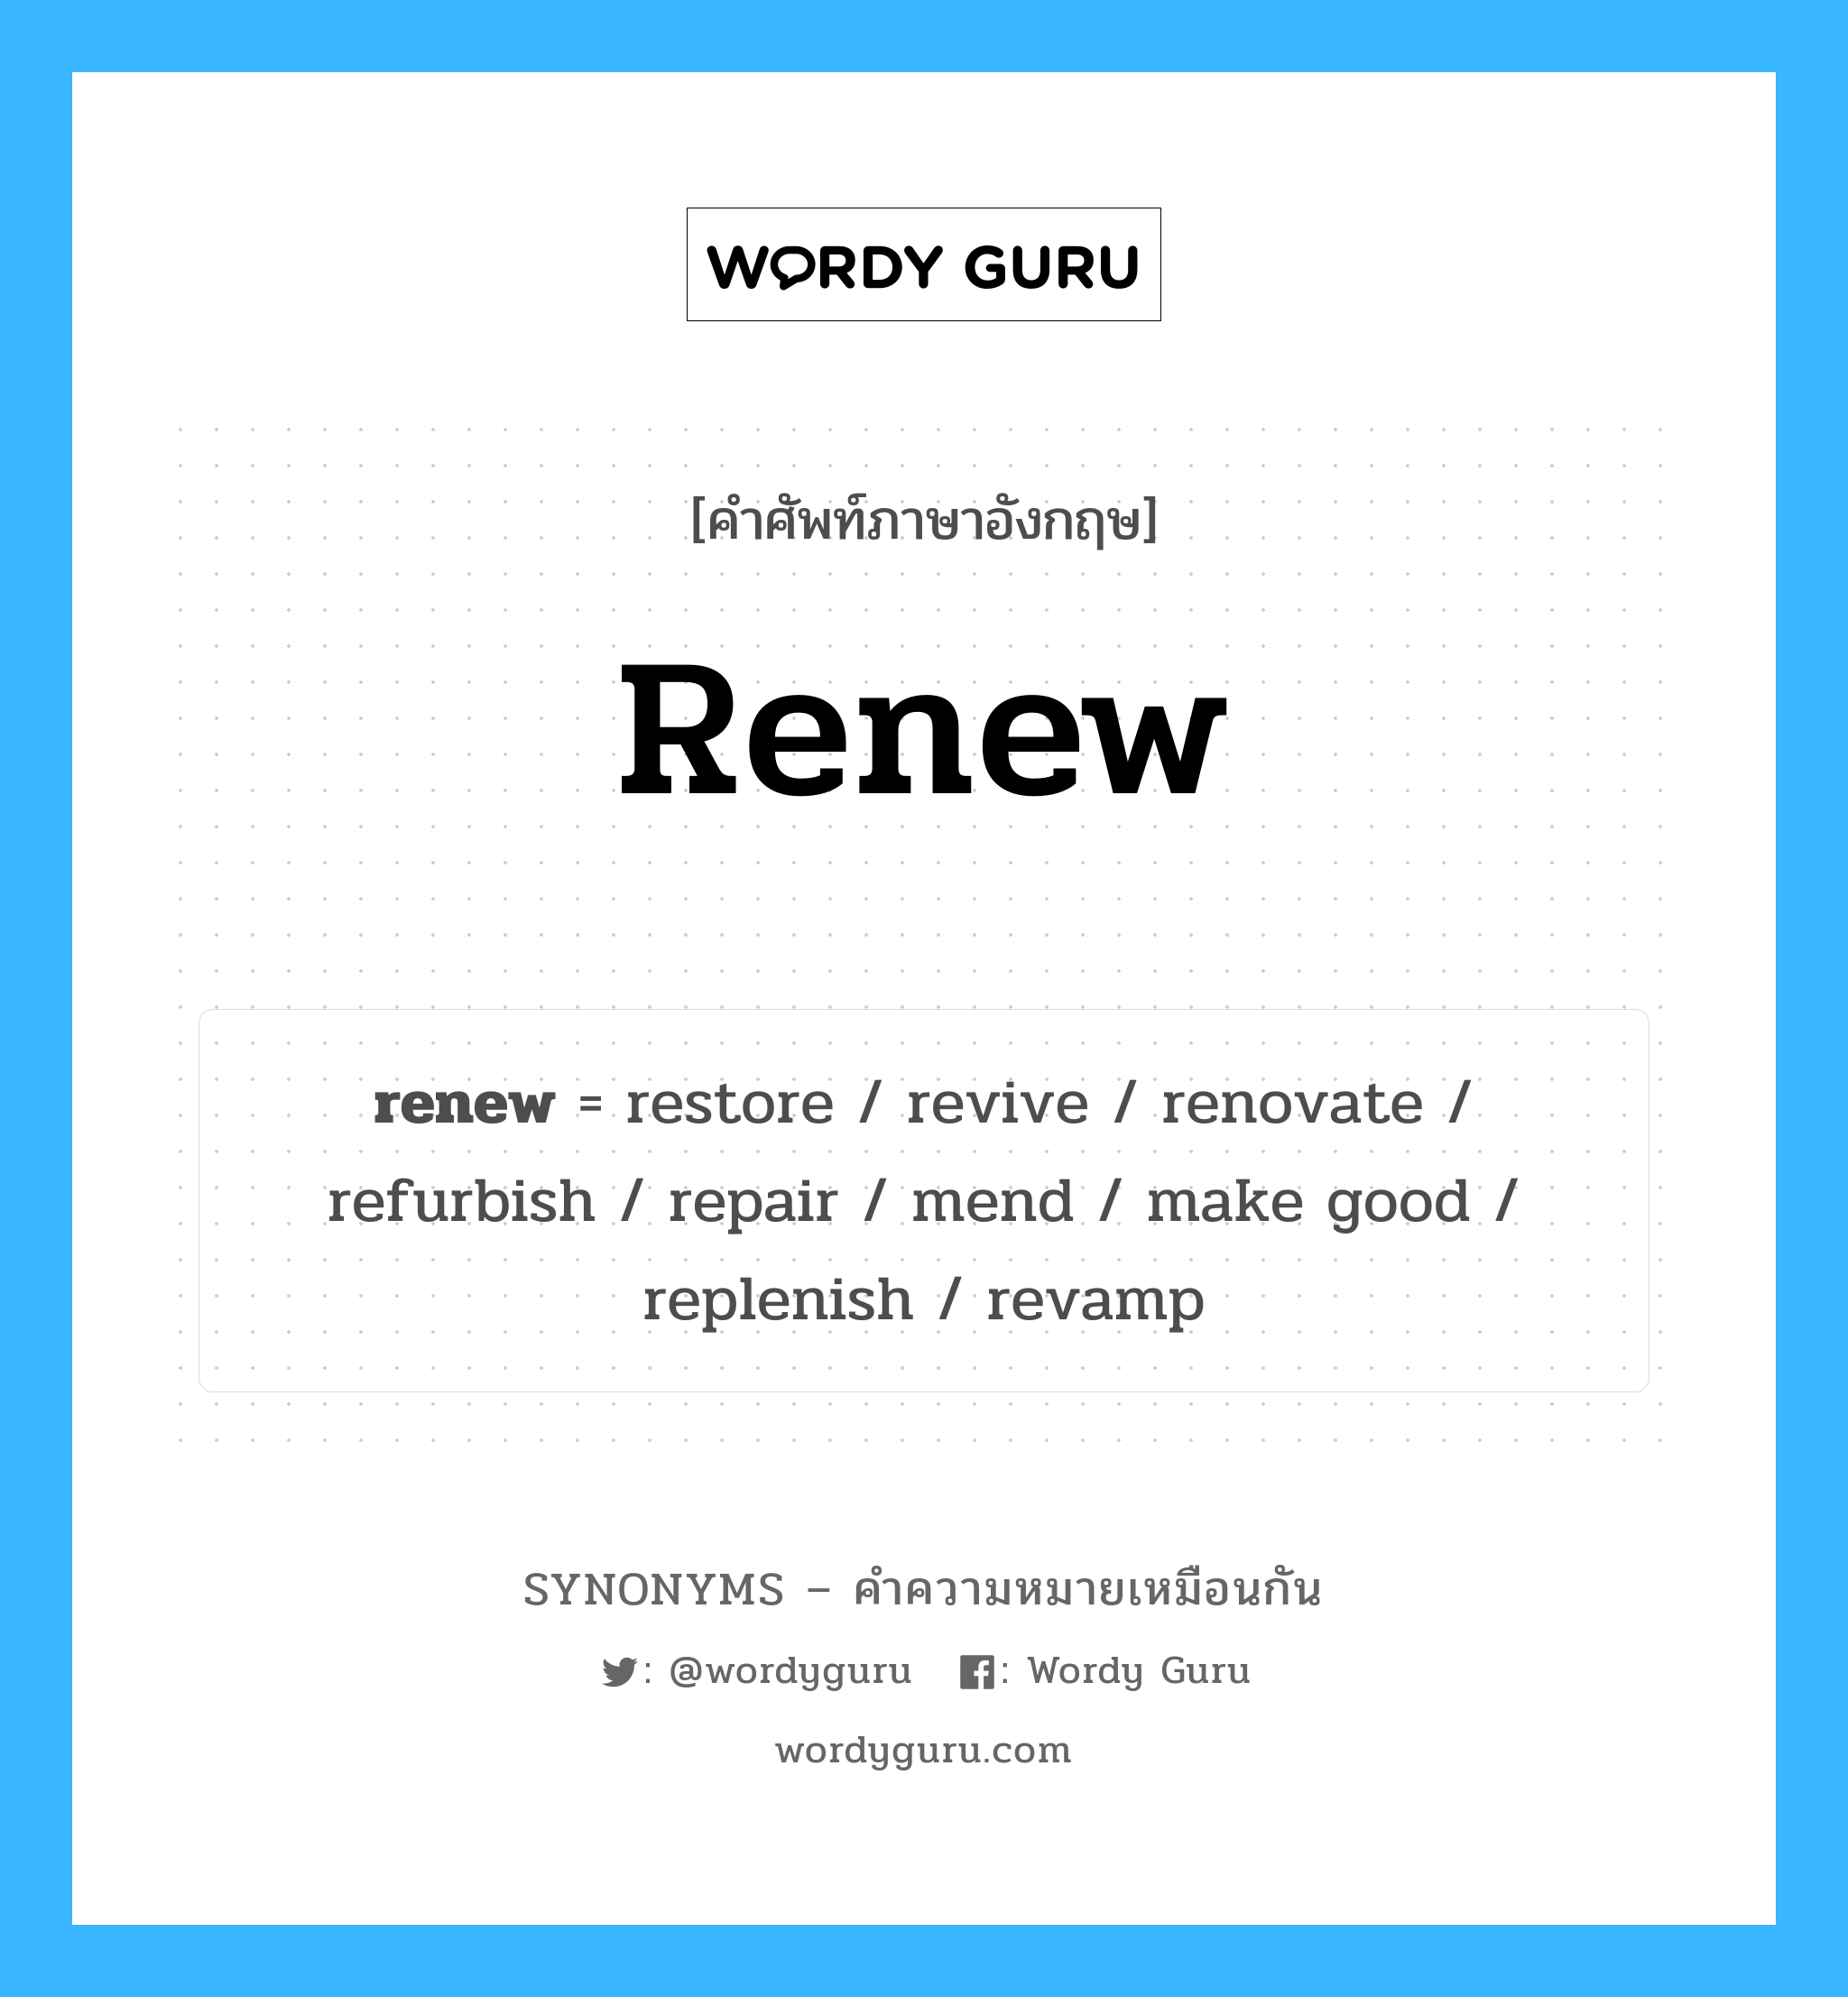 renew เป็นหนึ่งใน repair และมีคำอื่น ๆ อีกดังนี้, คำศัพท์ภาษาอังกฤษ renew ความหมายคล้ายกันกับ repair แปลว่า ซ่อมแซม หมวด repair